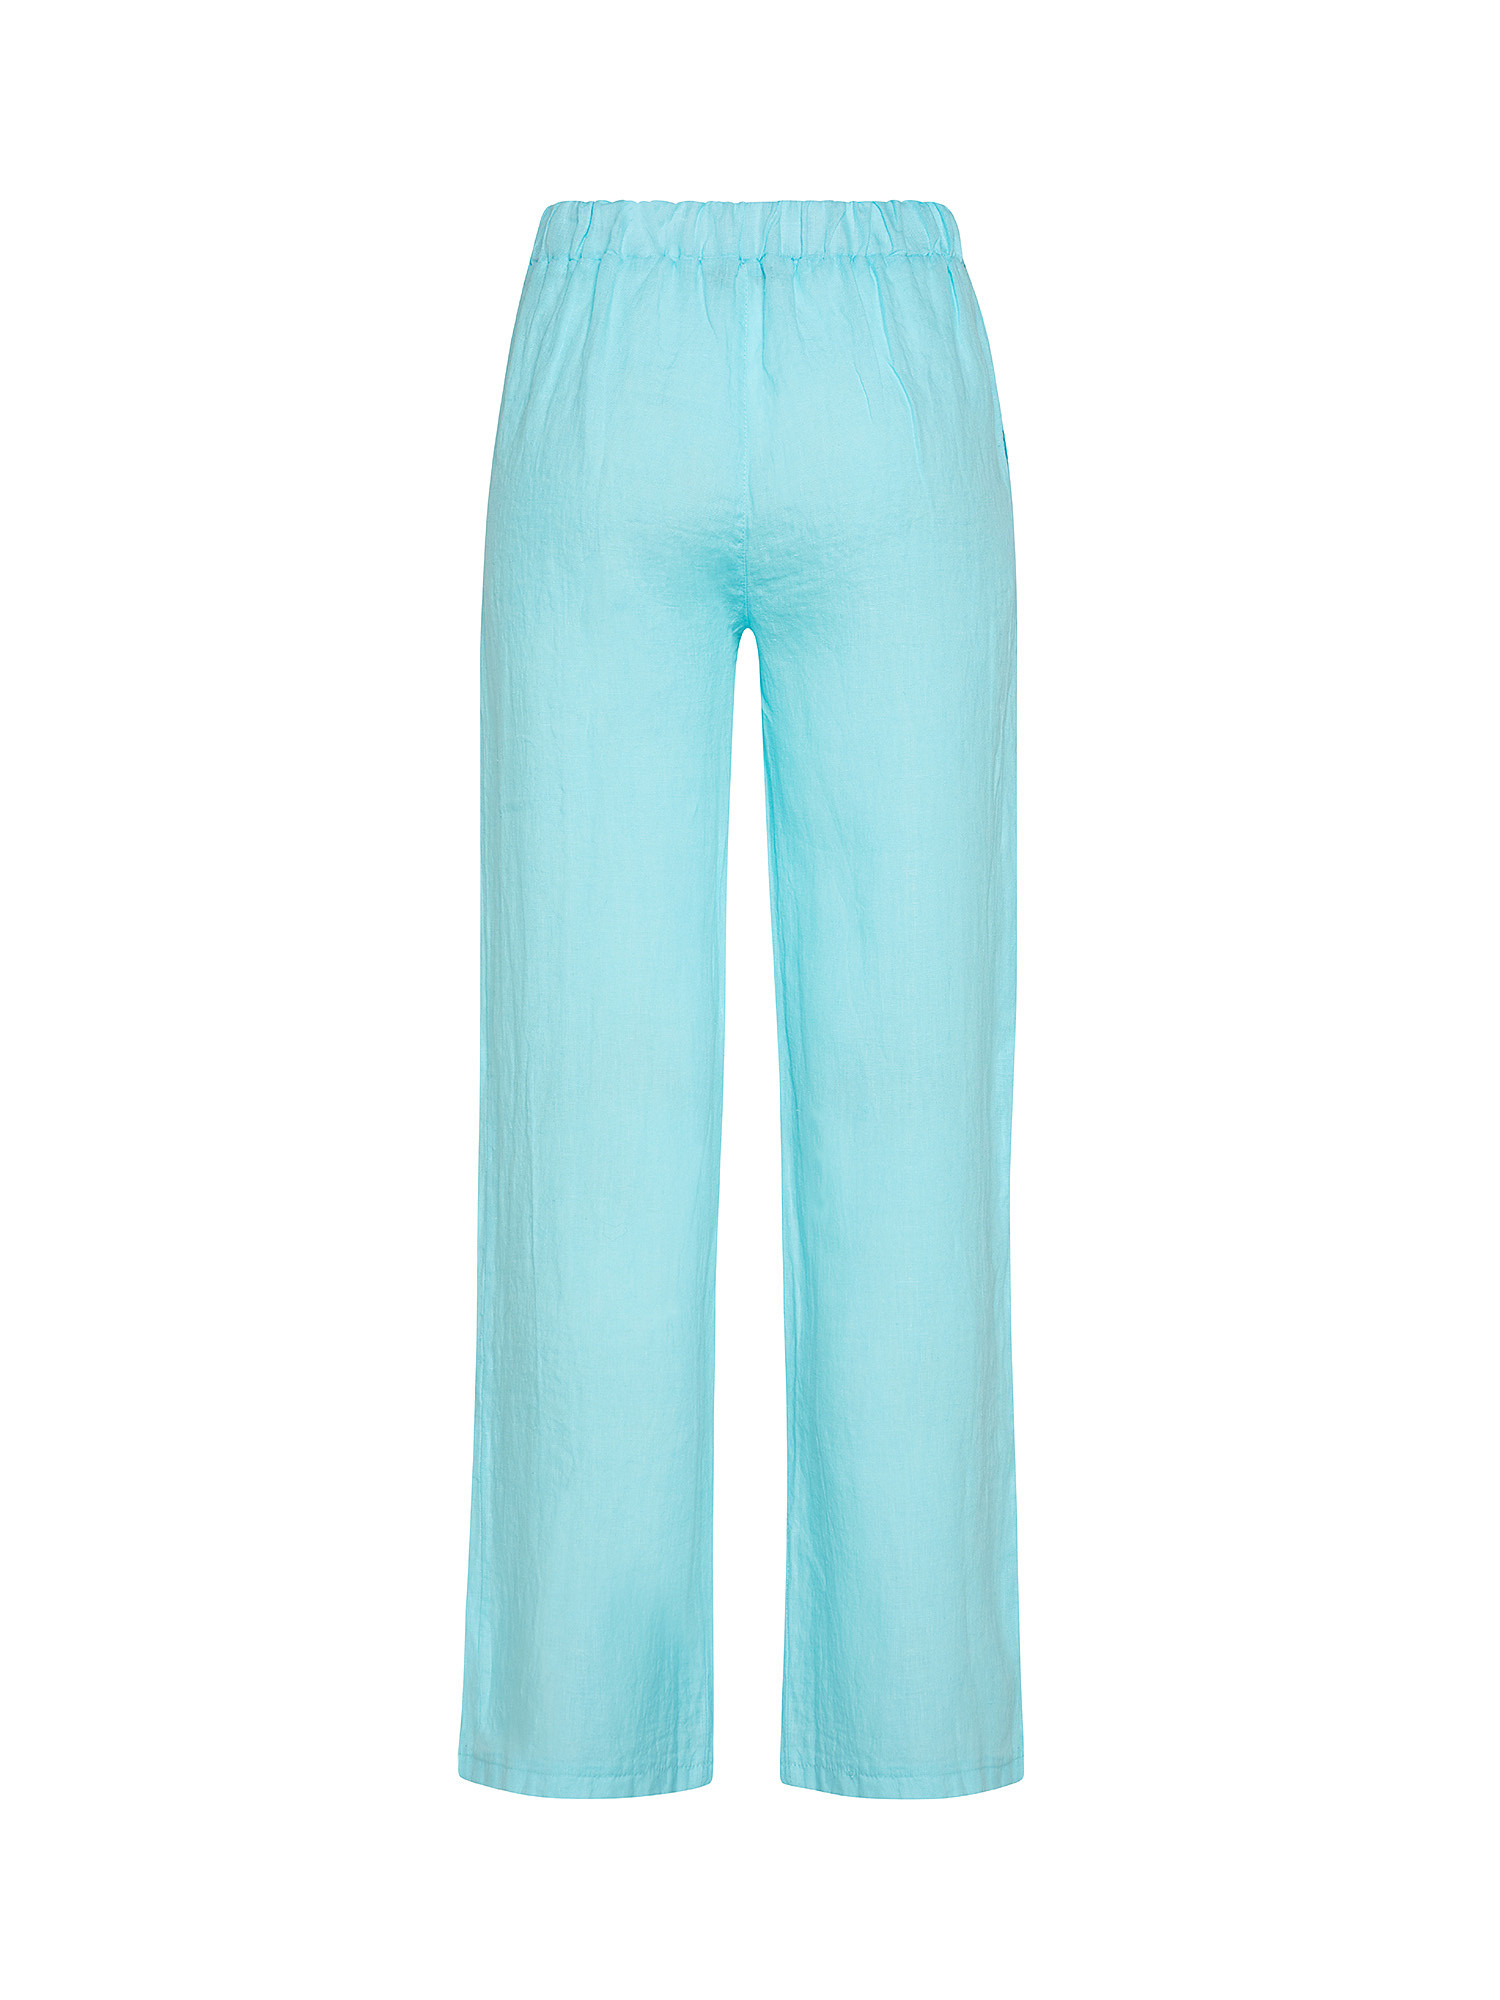 Pantalone puro lino con spacco, Azzurro, large